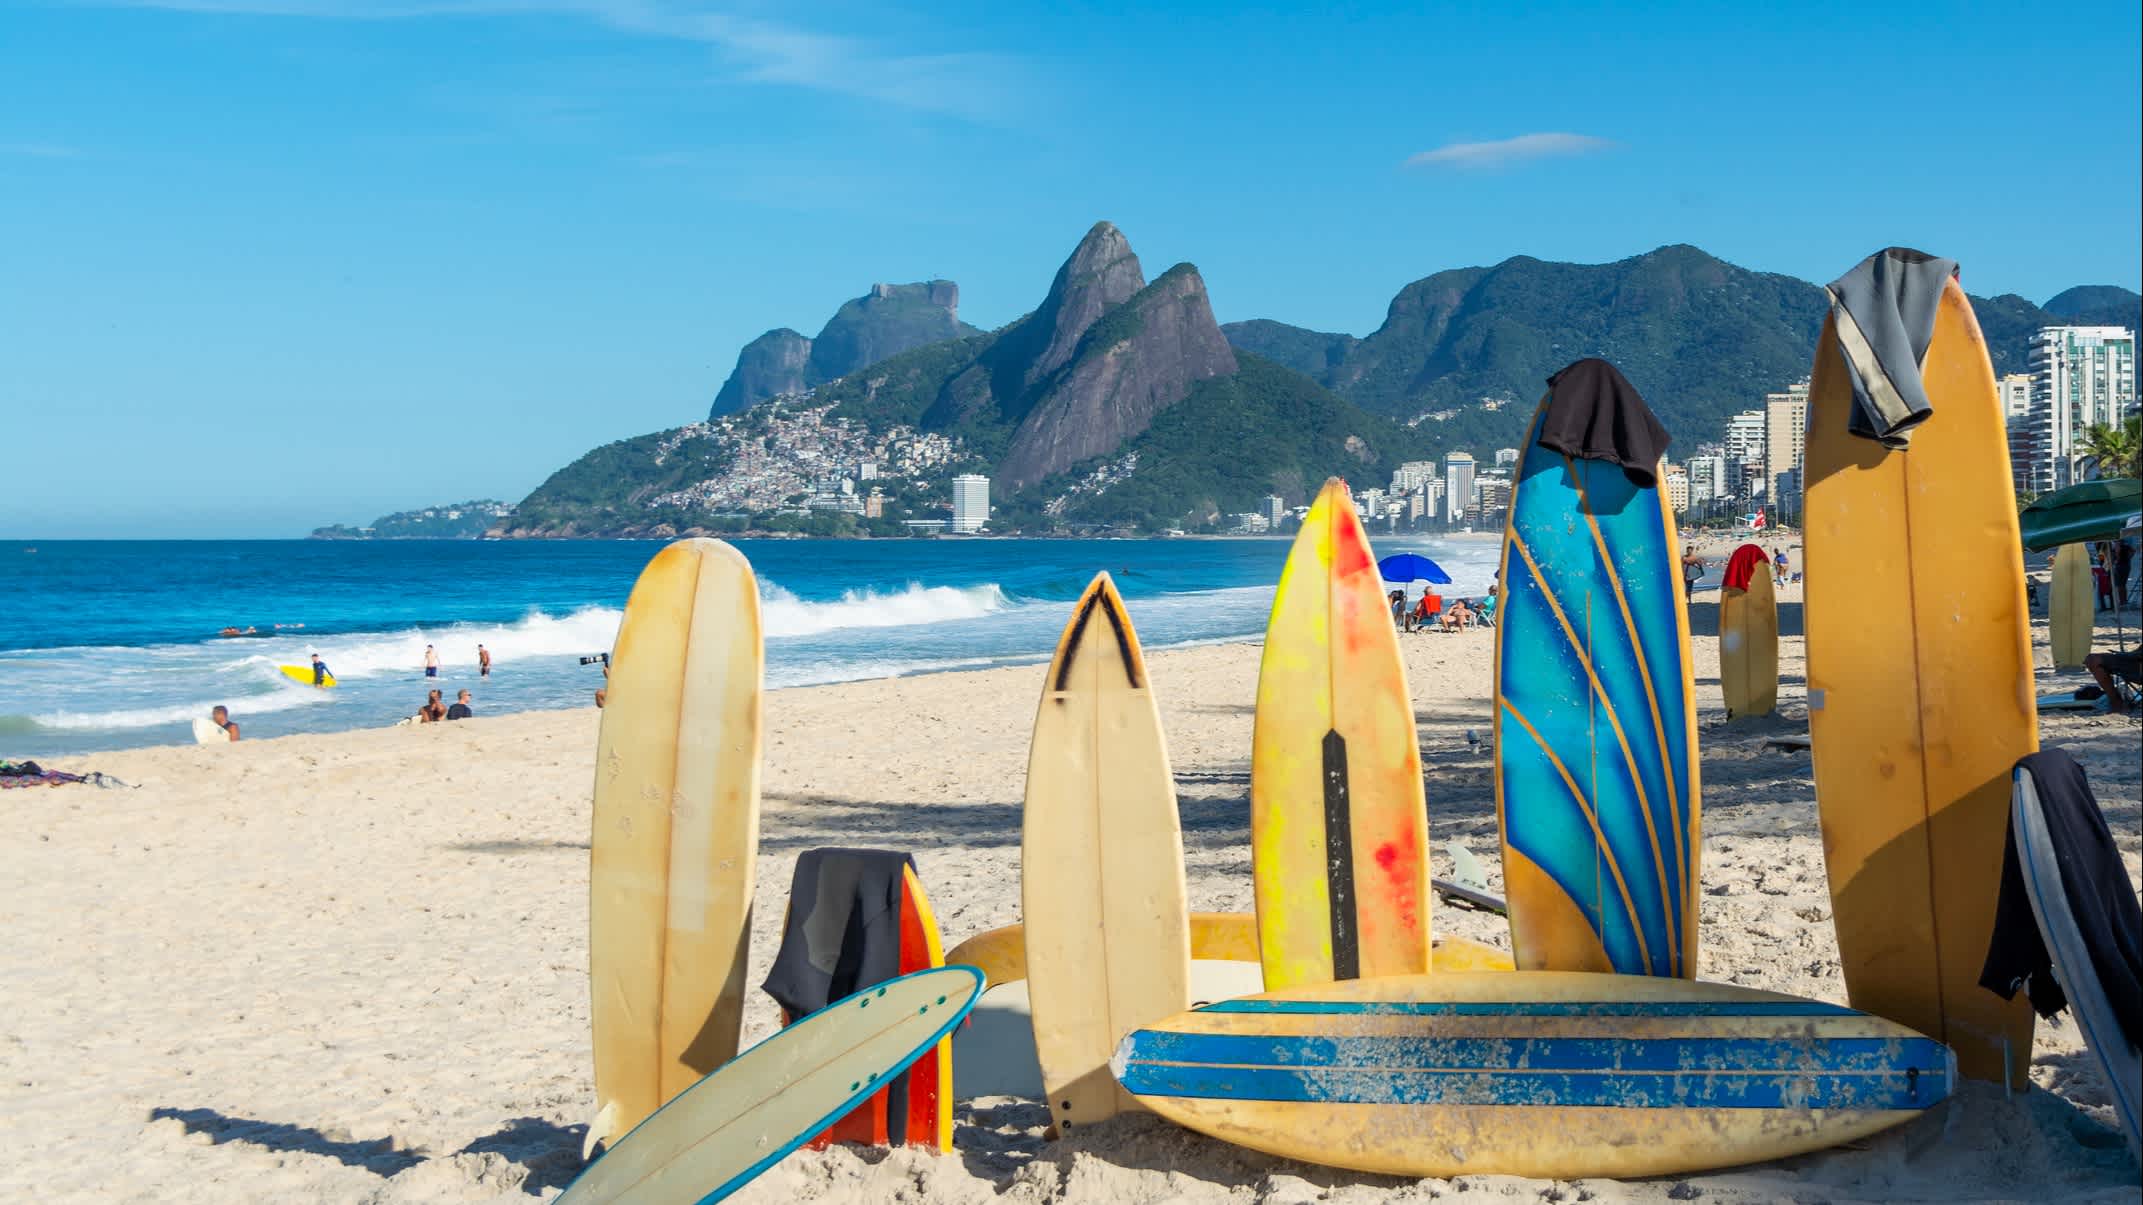 Planches de surf sur la plage d'Ipanema à Rio de Janeiro, Brésil.

